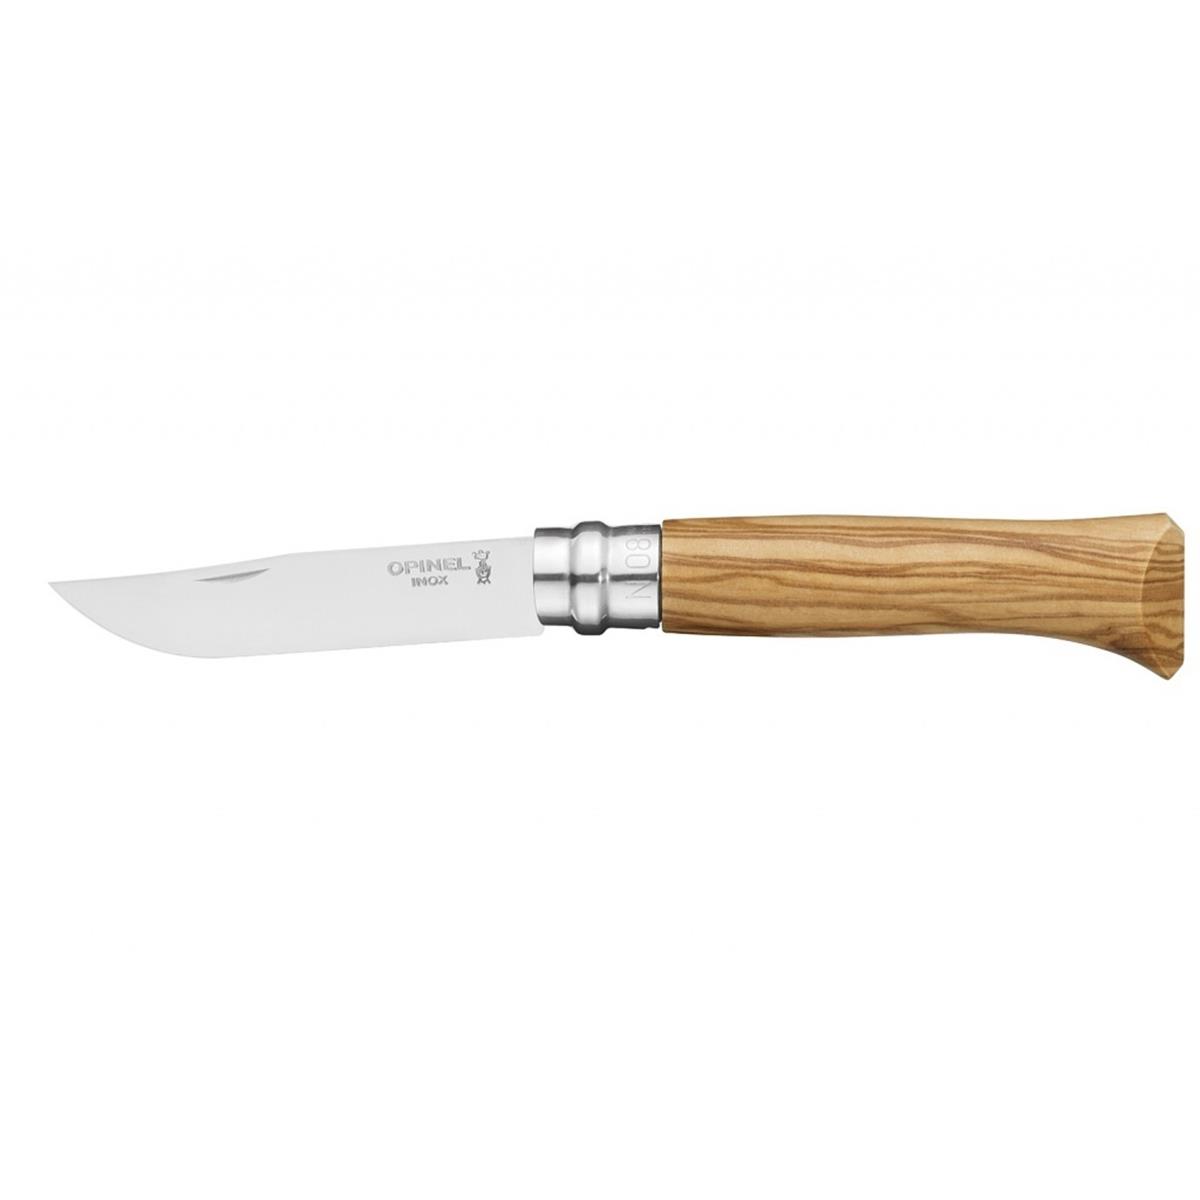 Нож филейный №8 VRI Folding Slim Olivewood нерж.сталь, длина клинка 8см (0011443) OPINEL кастрюля 2 1л нерж с кр